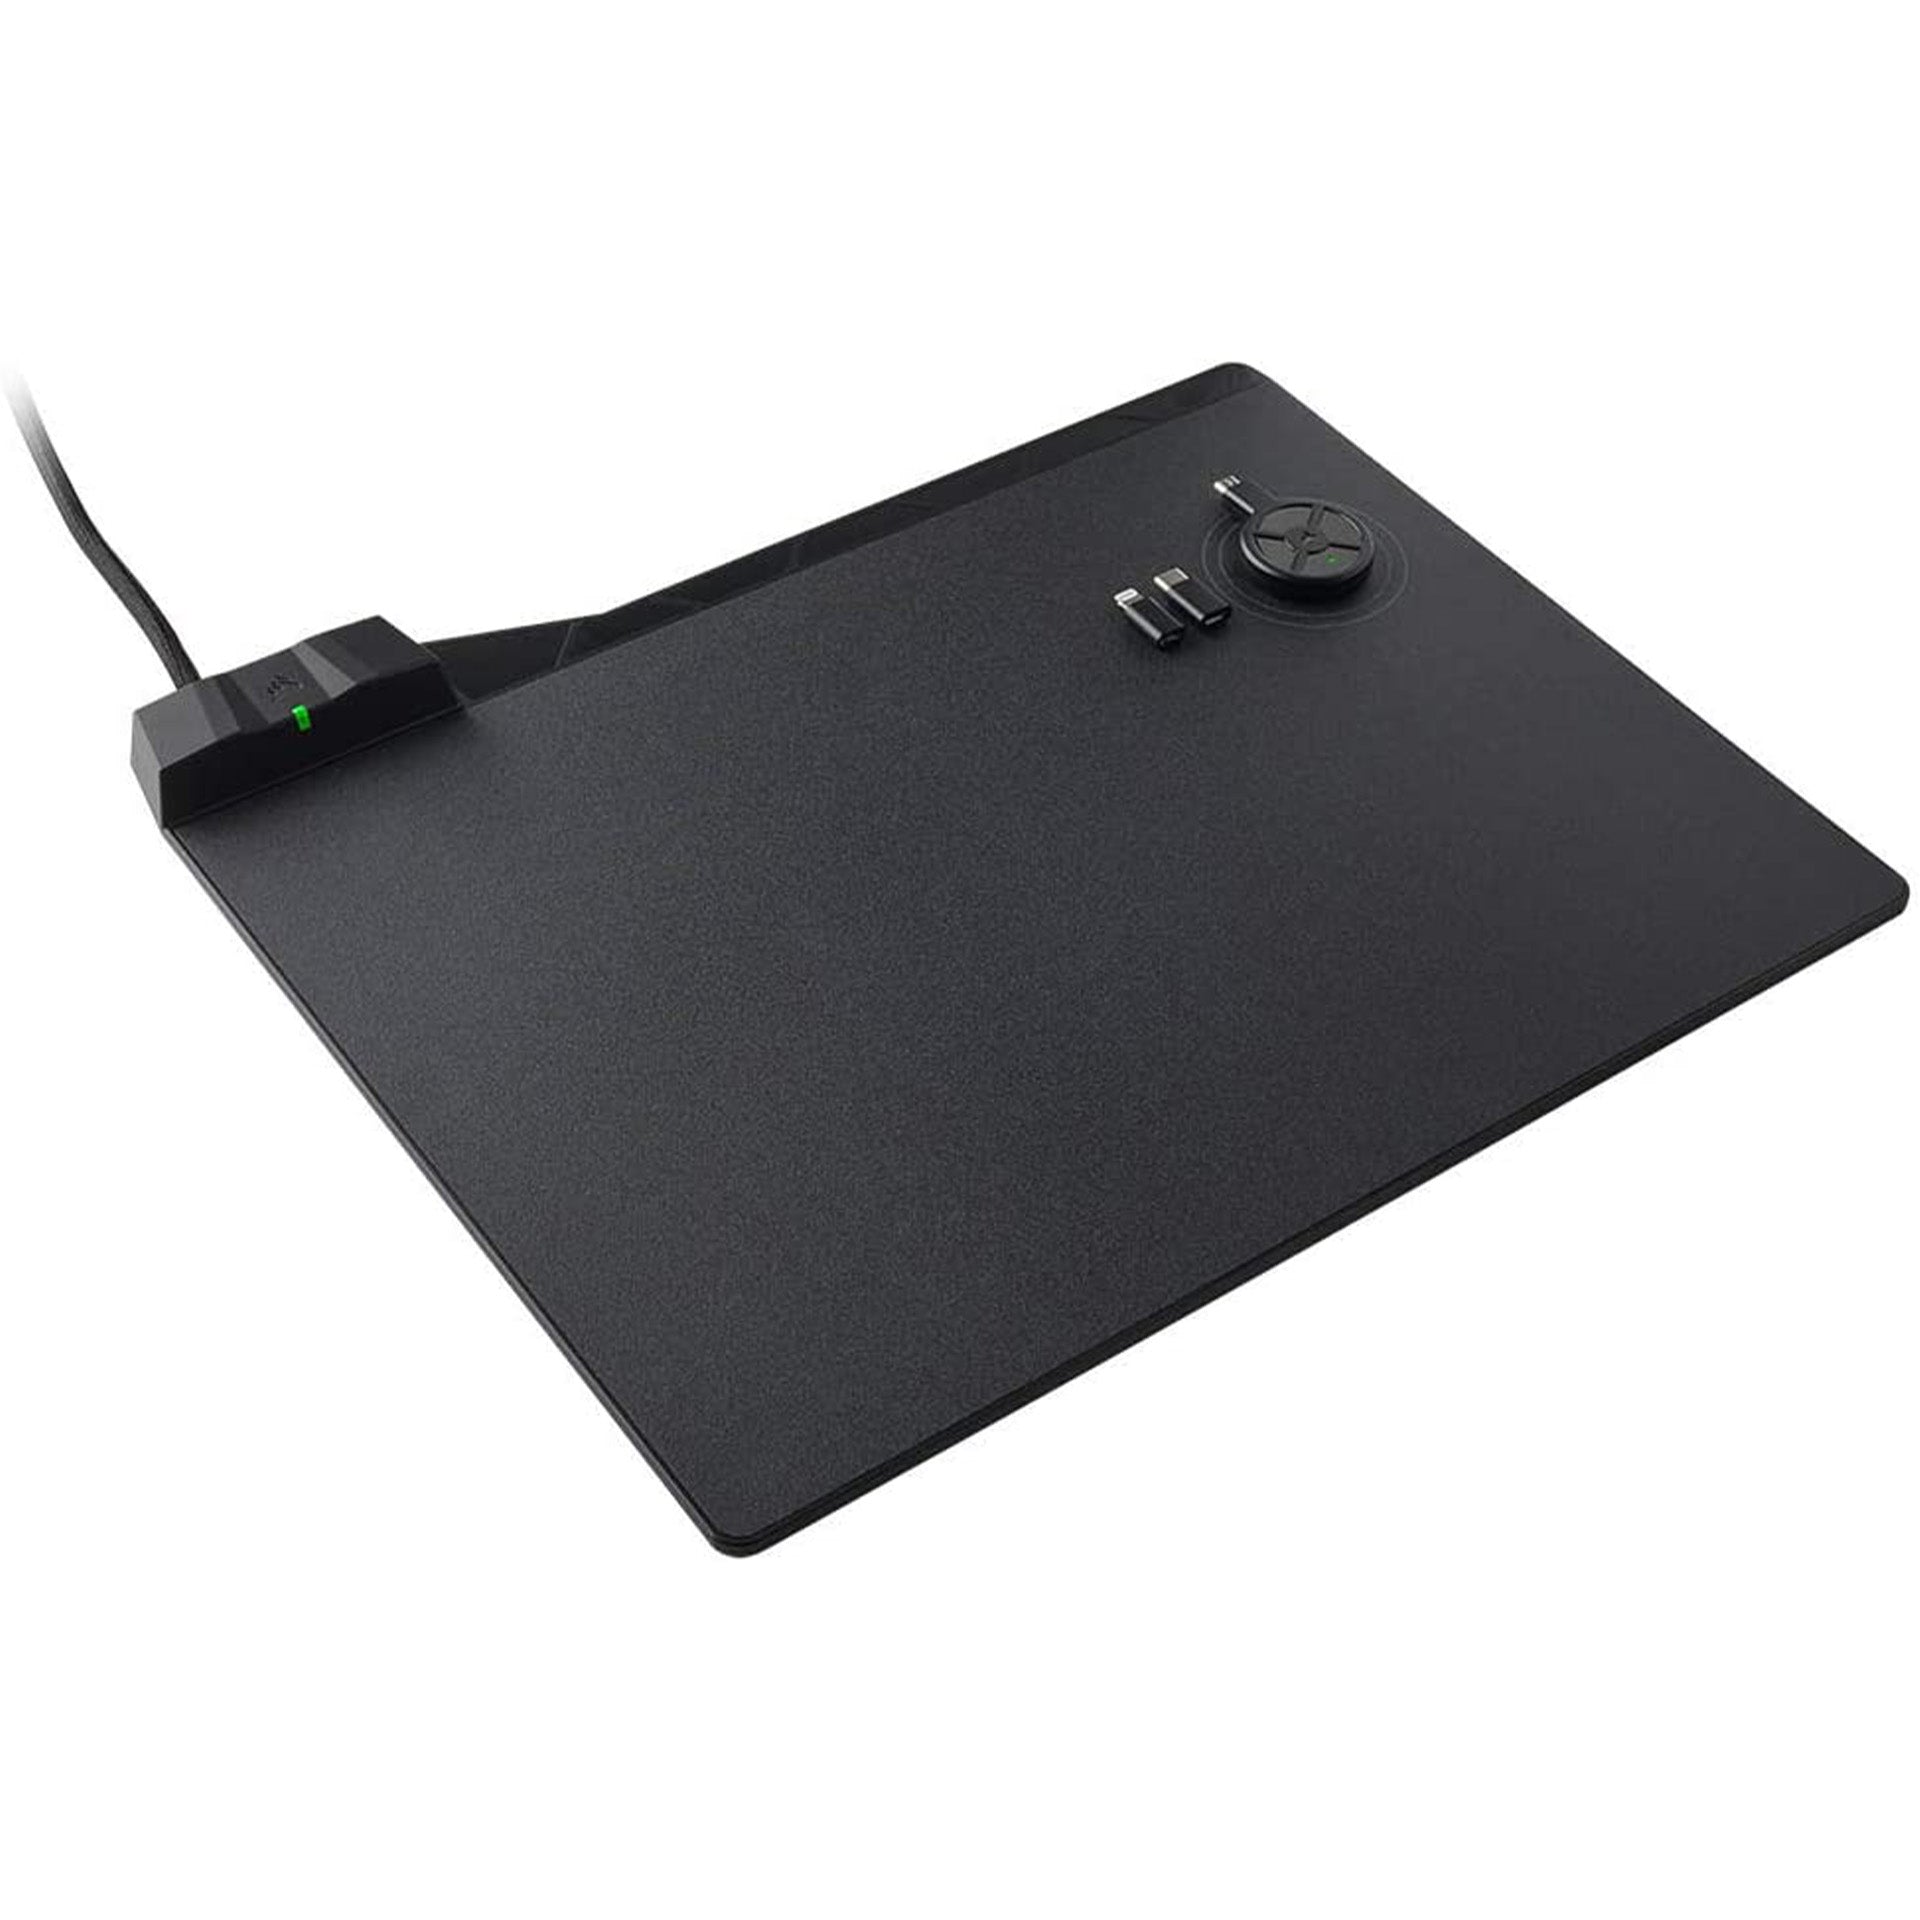 Mouse pad de carga inalámbrica CORSAIR MM1000, superficie dura micro-textura 26x35cm